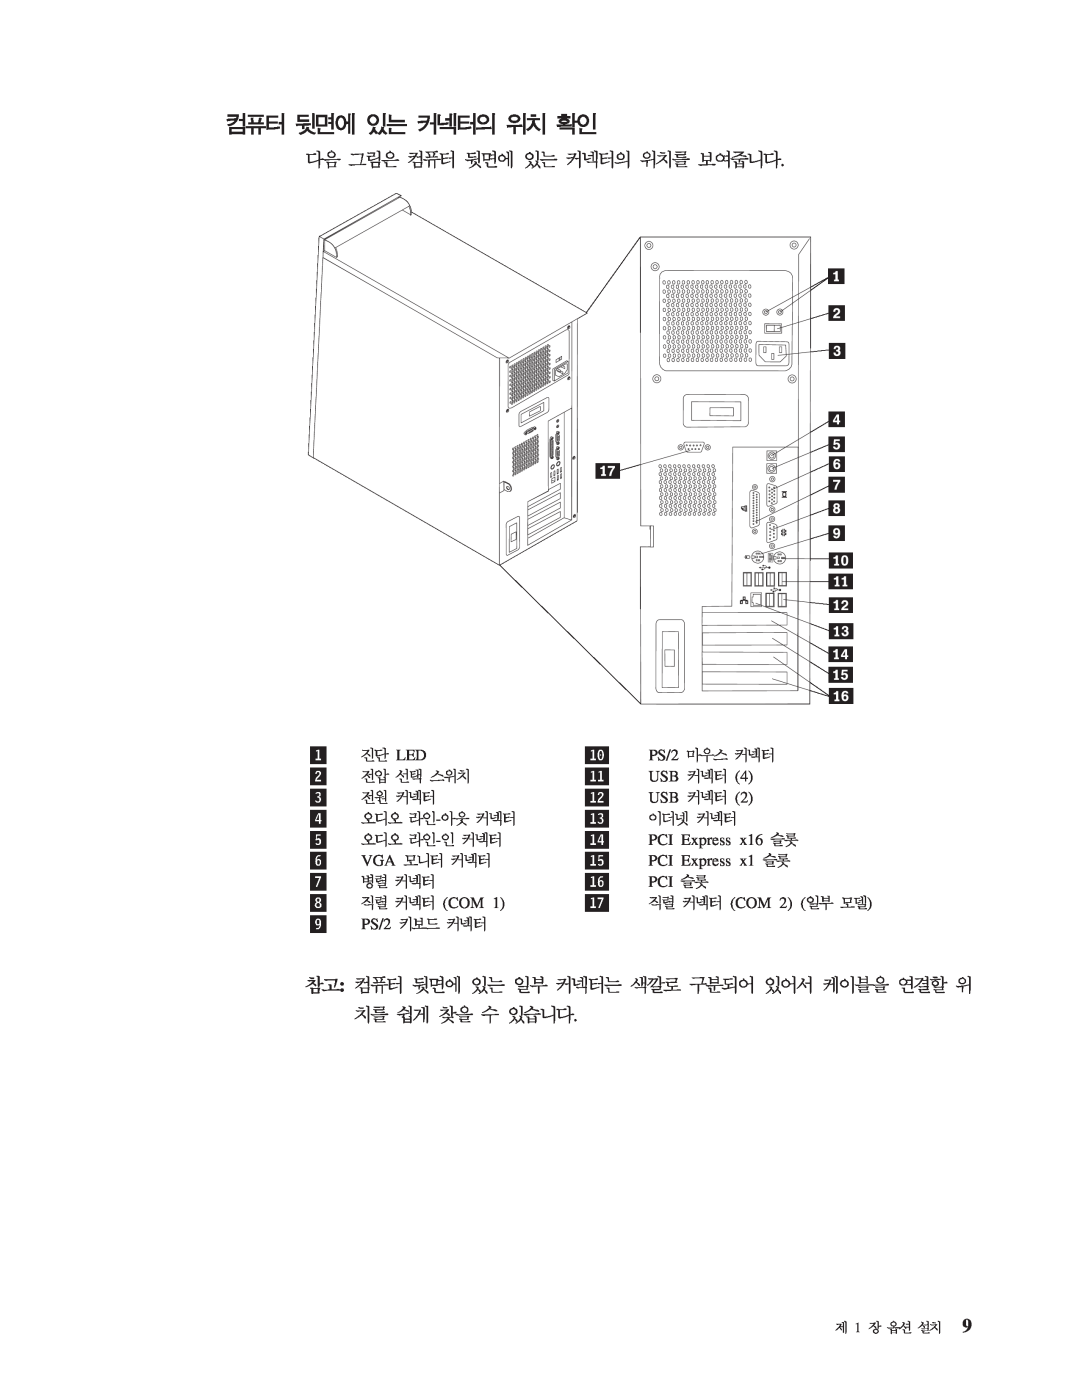 IBM 8143 manual 10, PS/2 